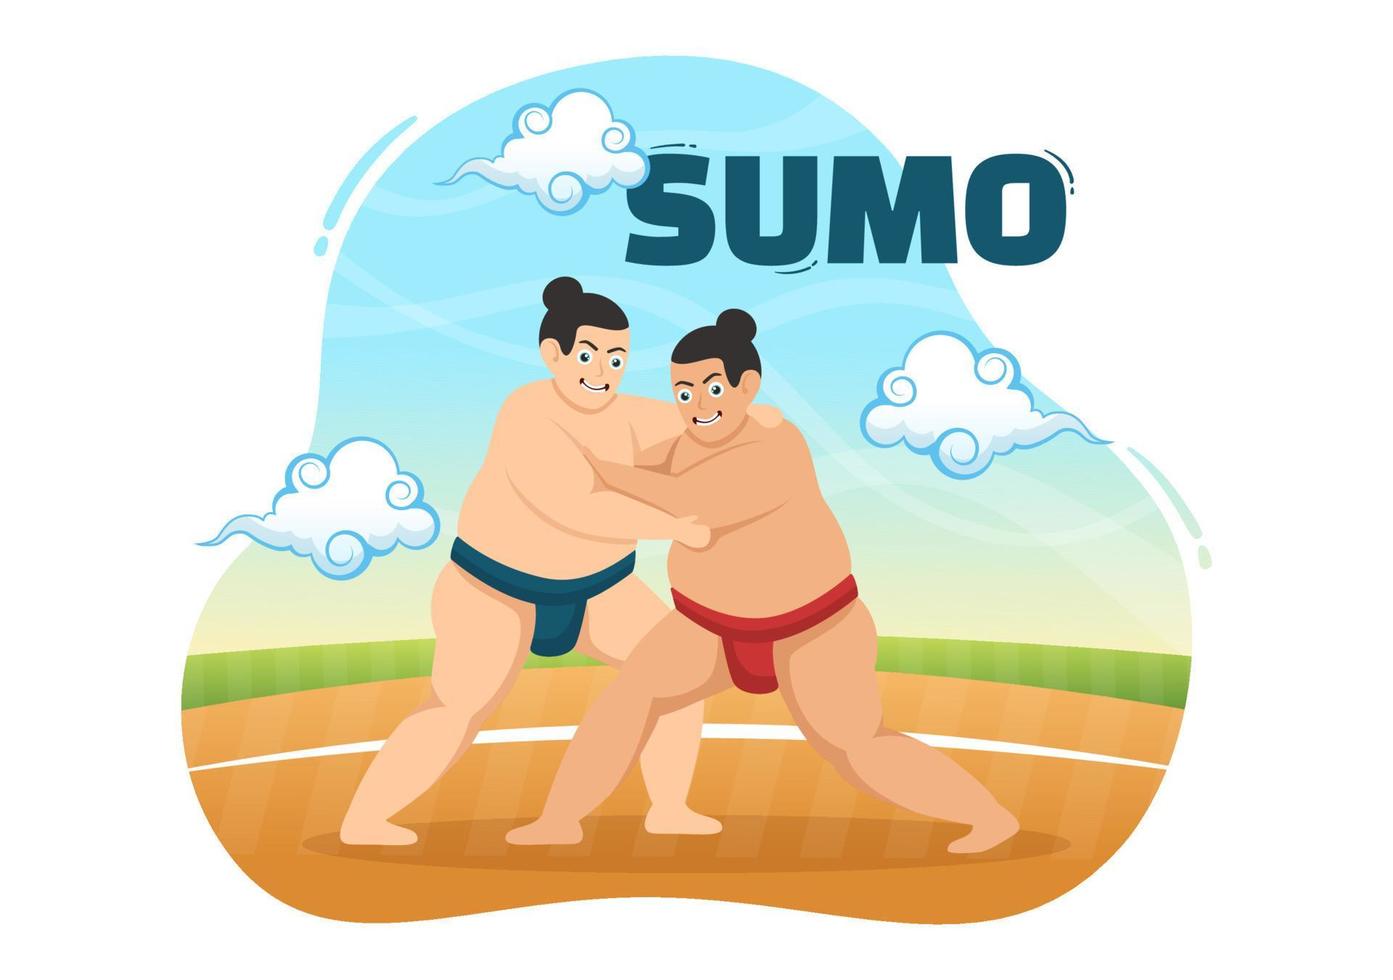 sumo luchador ilustración con luchando japonés tradicional marcial Arte y deporte actividad en plano dibujos animados mano dibujado aterrizaje página plantillas vector